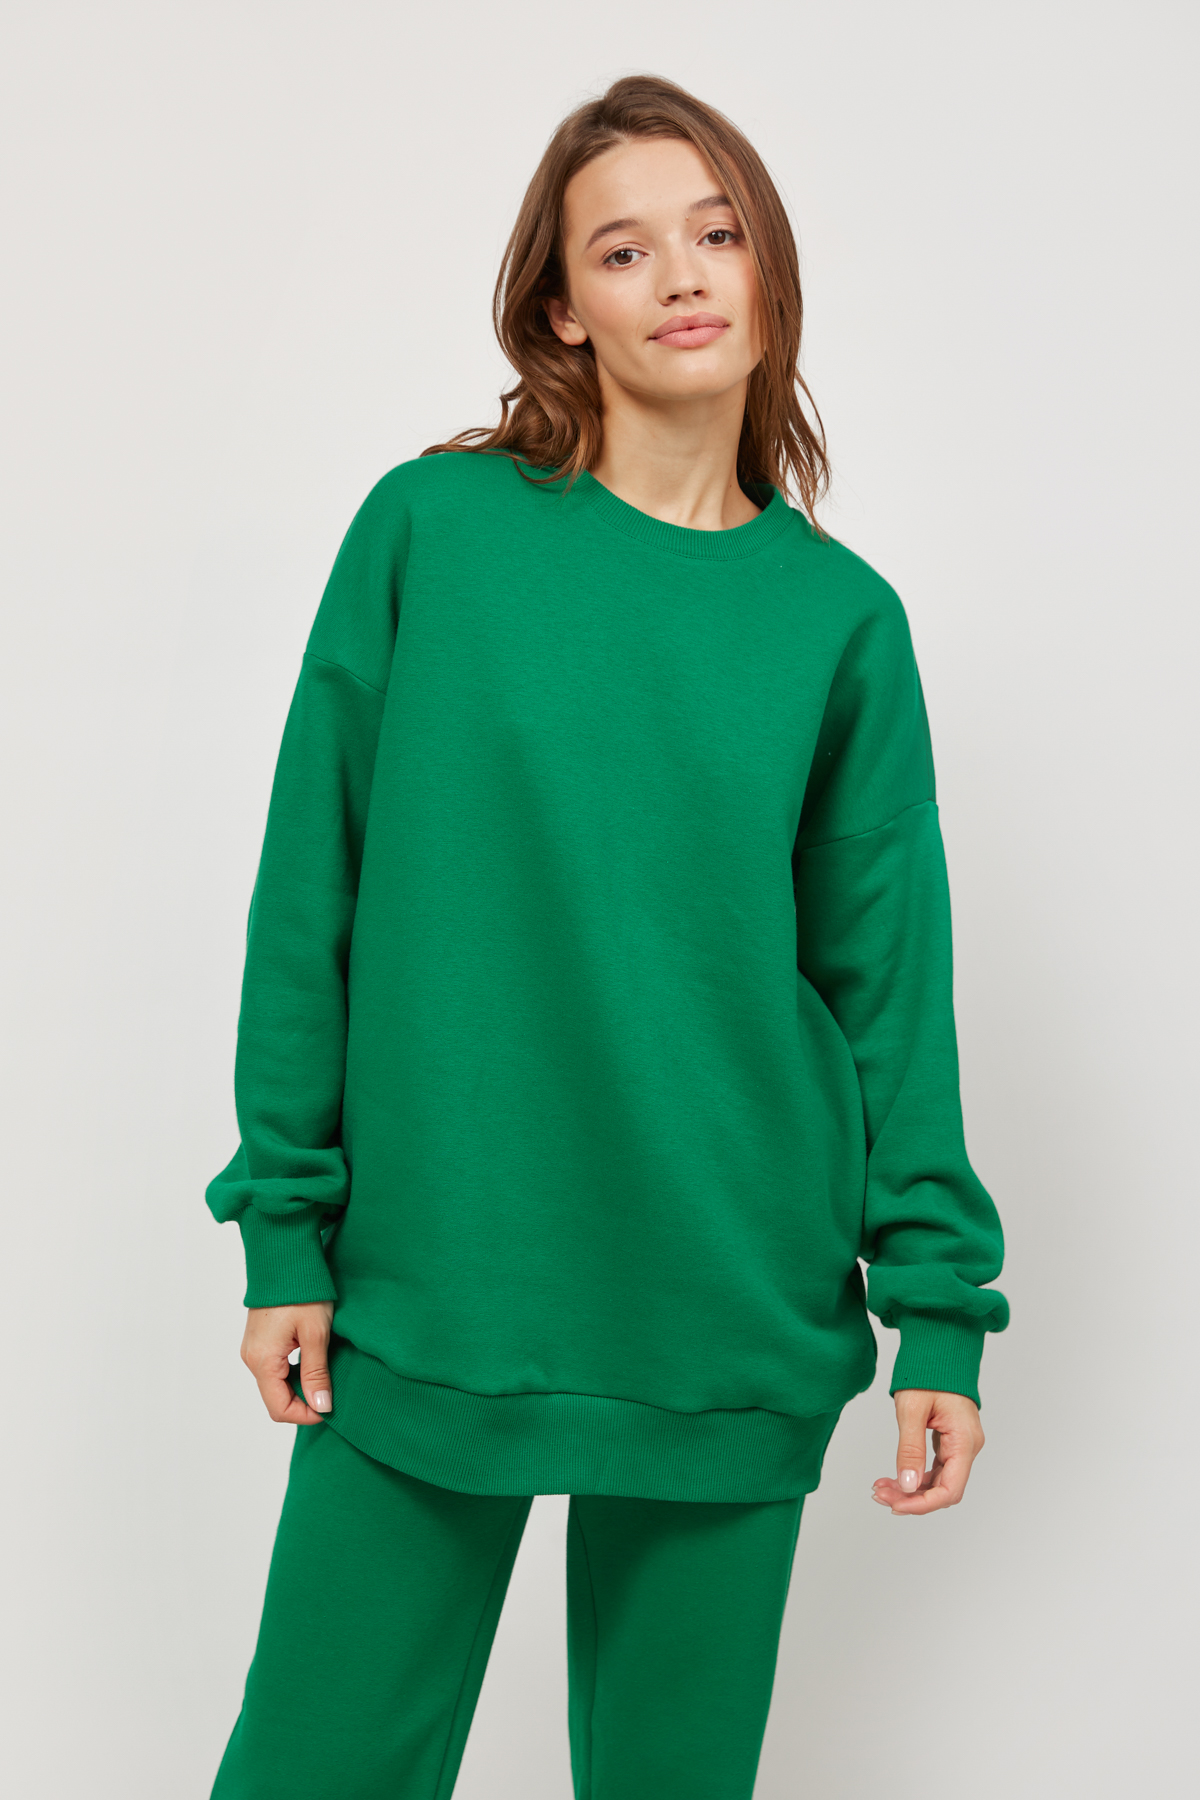 Green jersey sweatshirt with fleece, photo 2